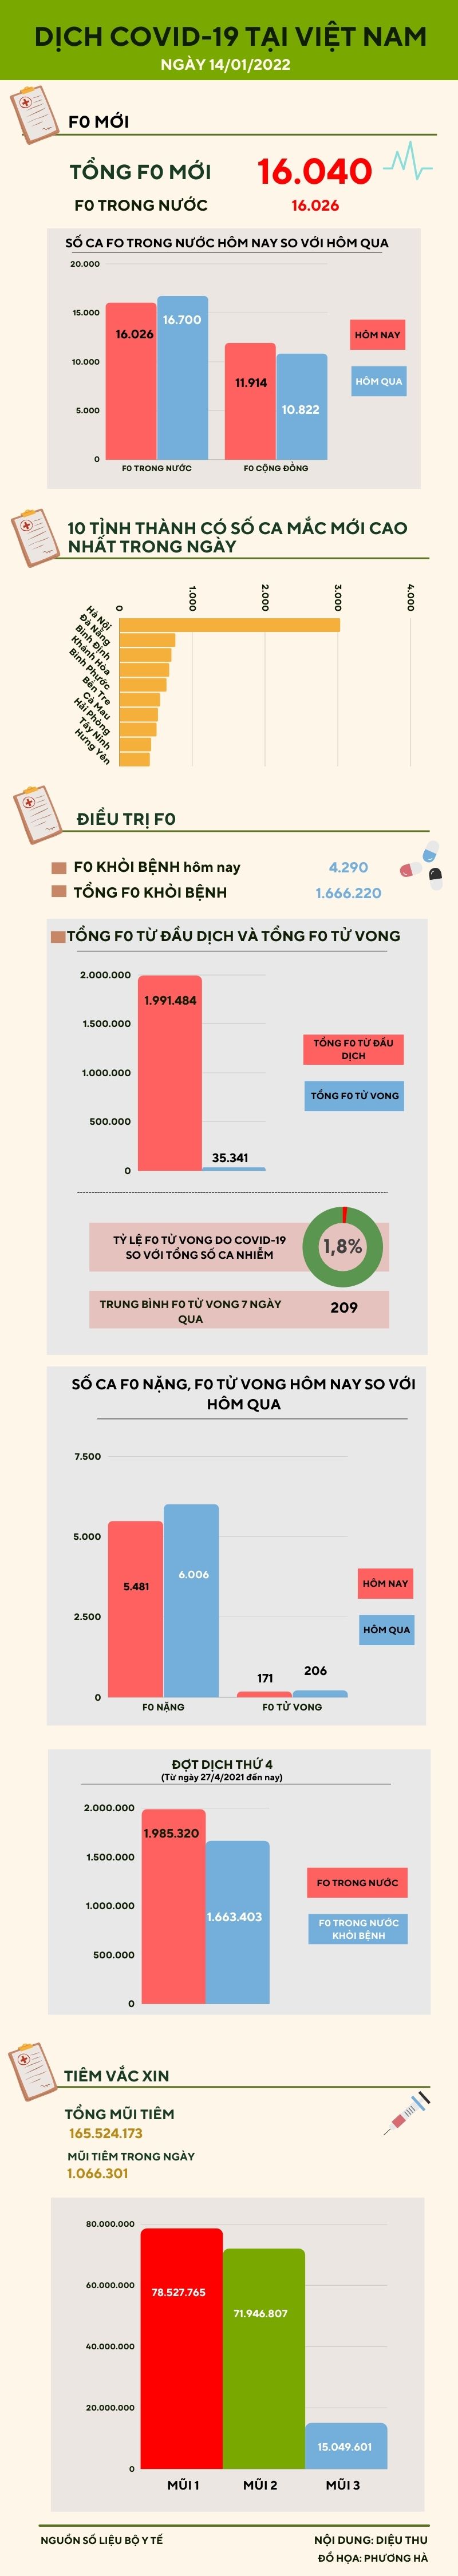 Ngày 14/1: Thêm 16.026 ca COVID-19 trong nước, riêng Hà Nội có 3.029 ca - 1